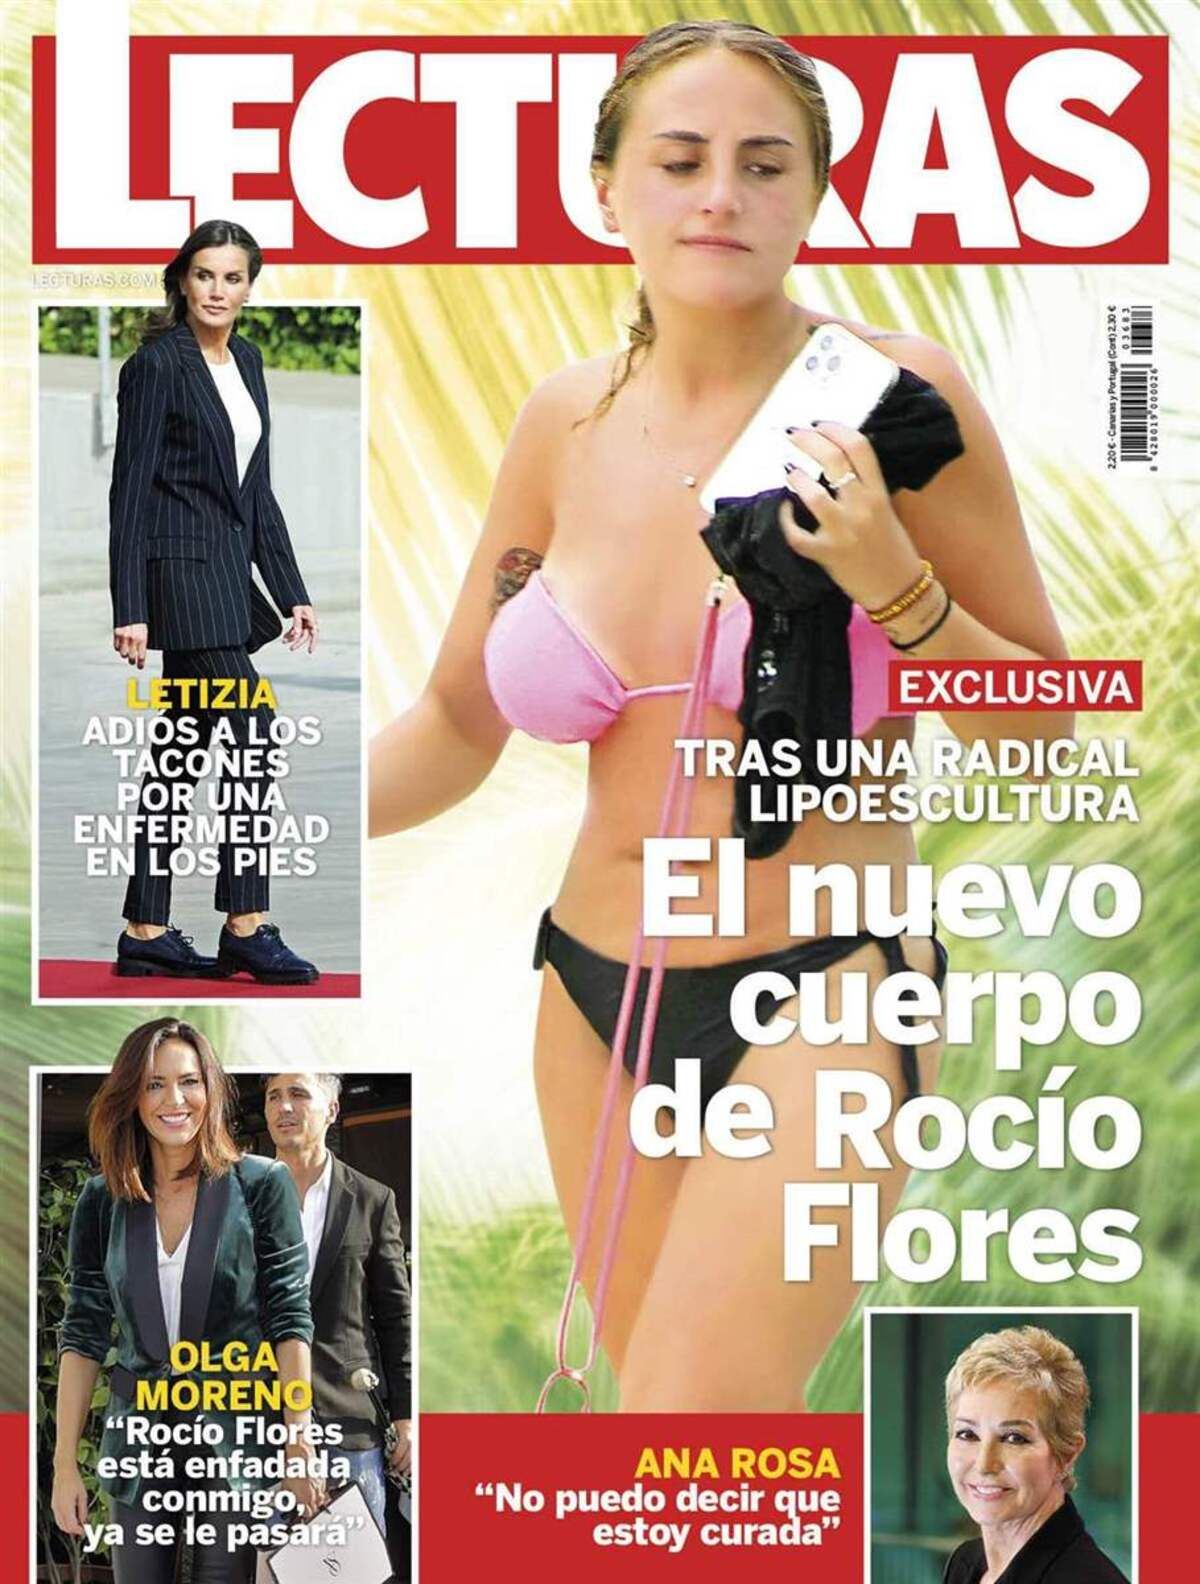 Portada de la revista Lecturas de esta semana con el nuevo aspecto físico de Rocío Flores.